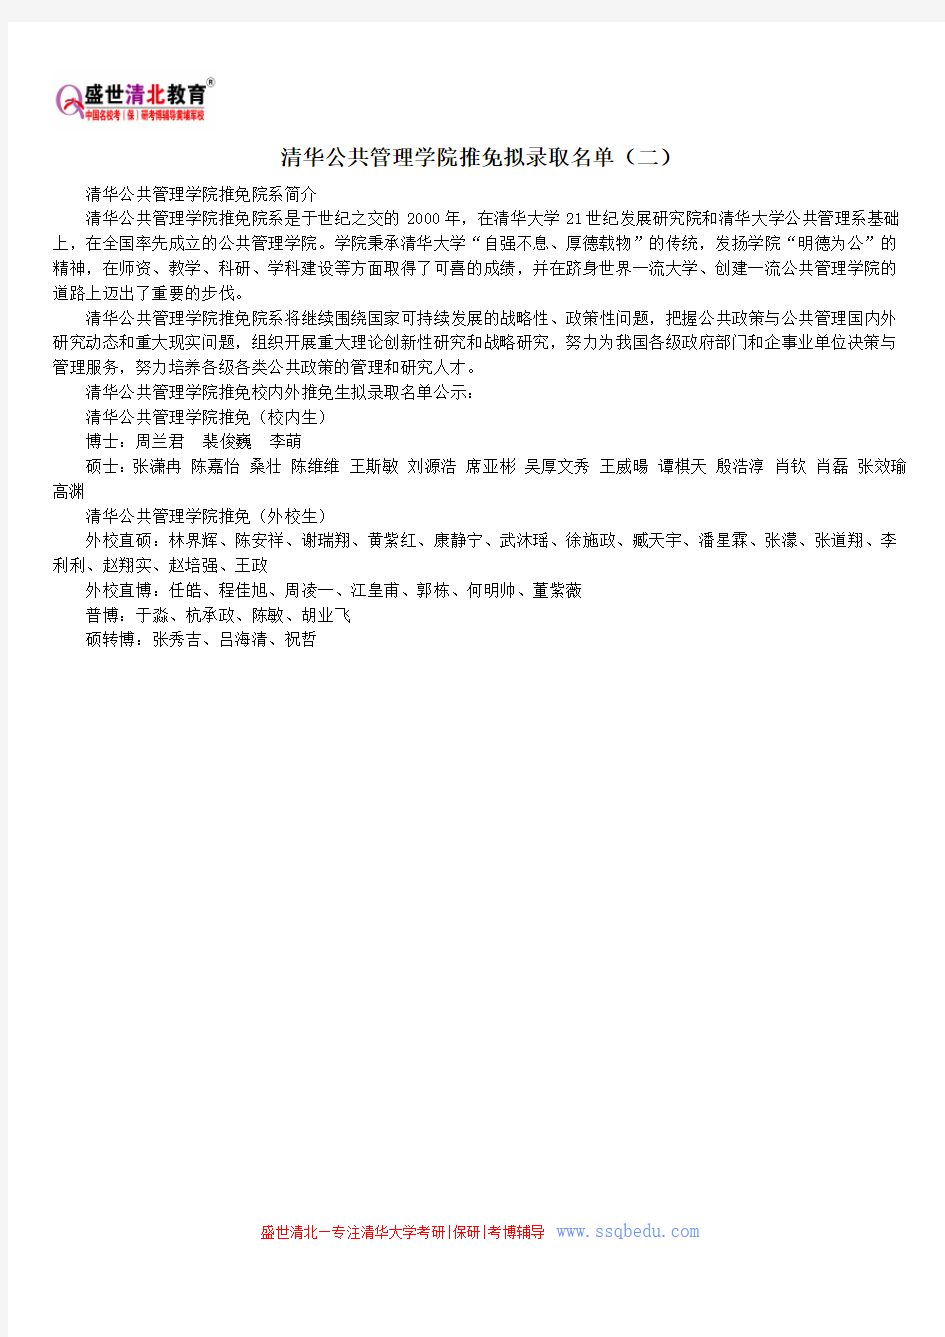 清华公共管理学院推免拟录取名单(二)